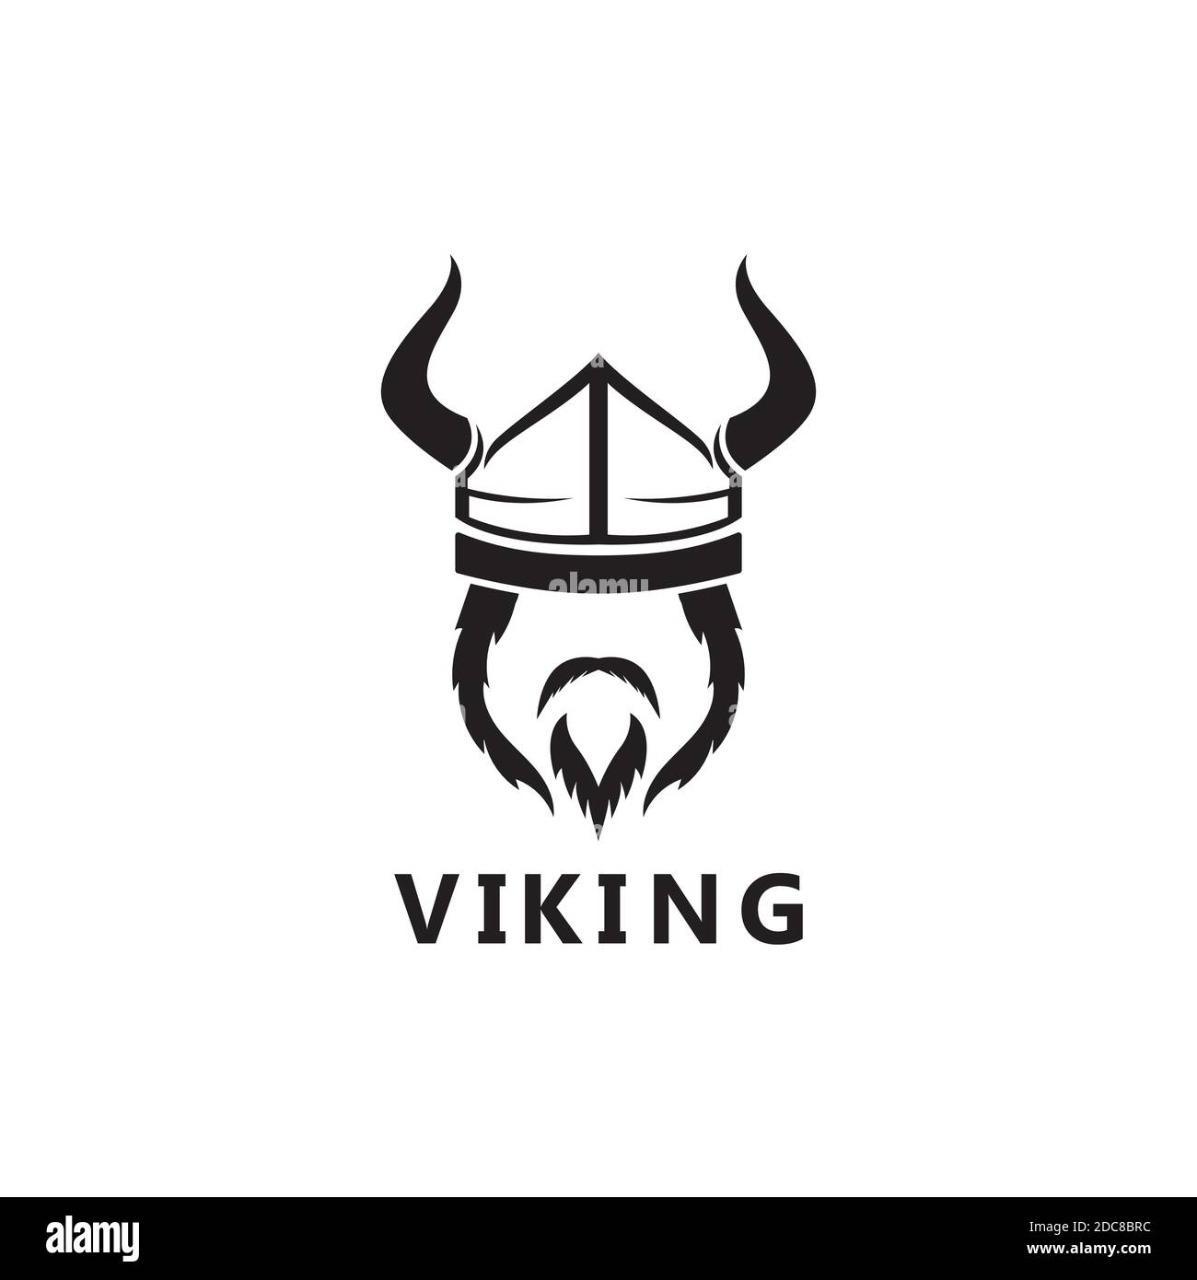 Vikingo95?s=7rpdbiawo1oc8eo4ollprstz9hqqtpkeywerdezydyw=